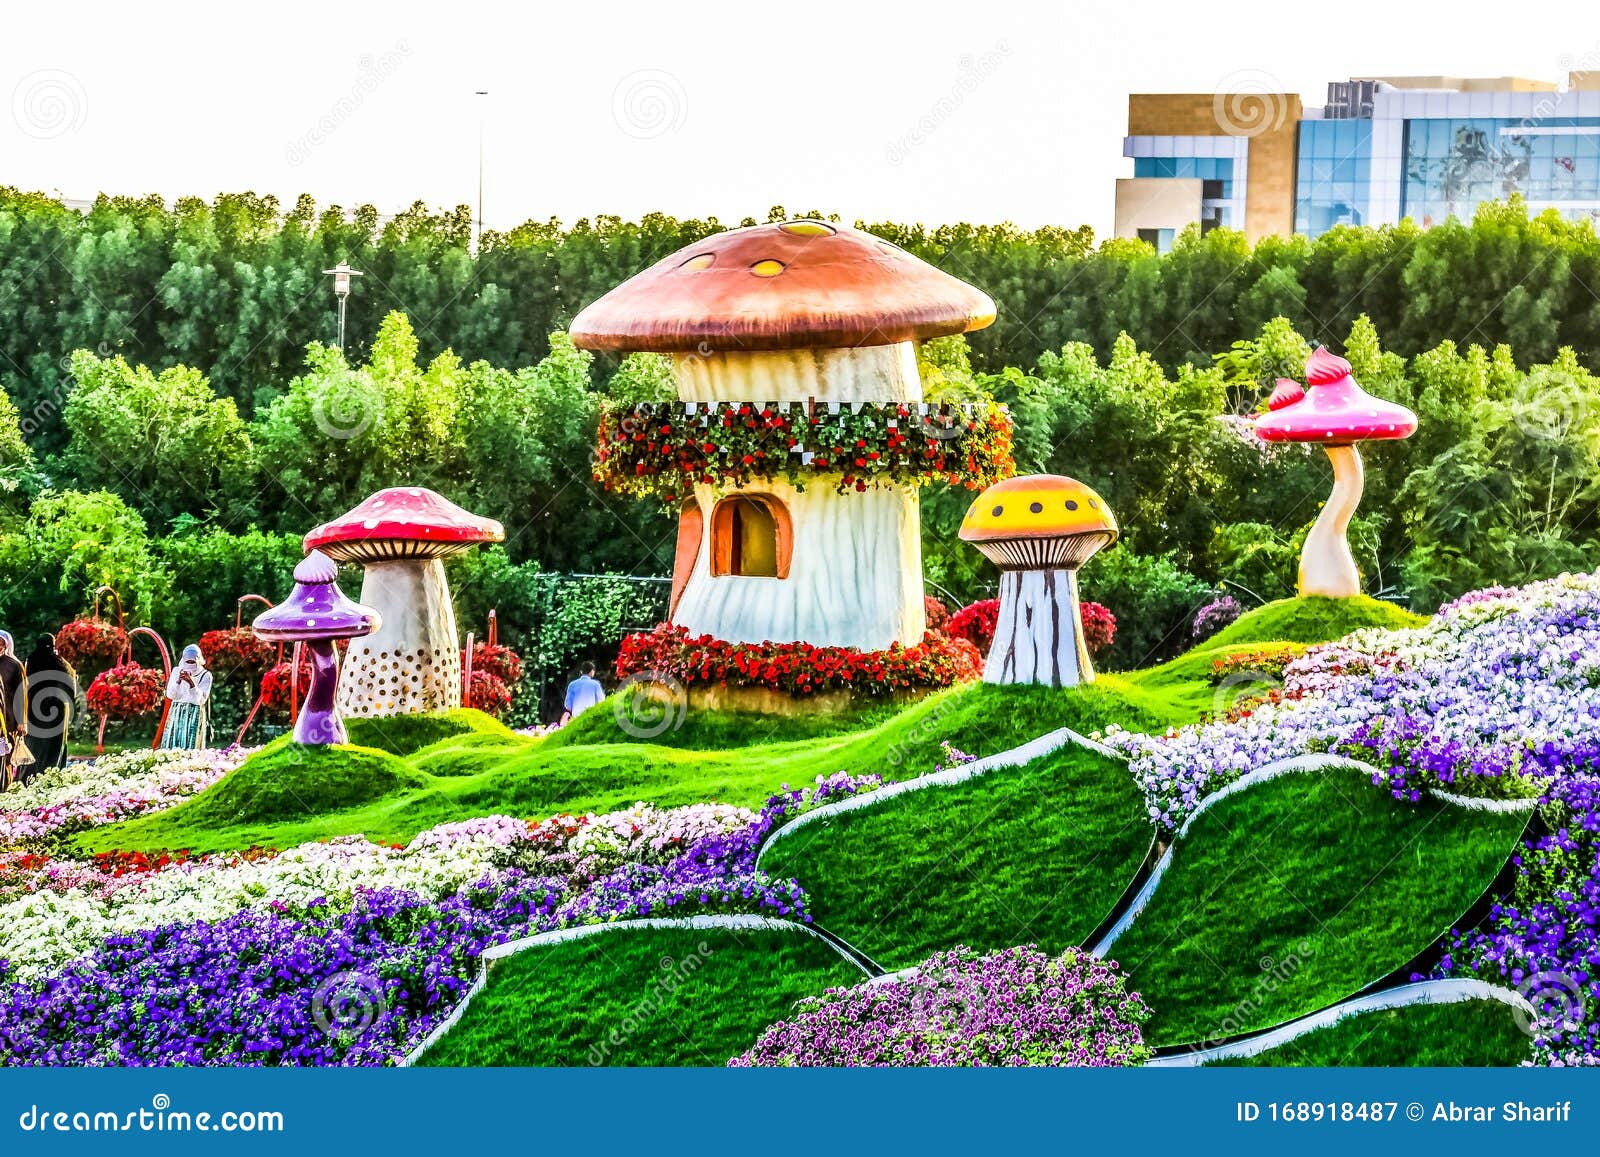 6 625 Dubai Garden Photos Free Royalty Free Stock Photos From Dreamstime